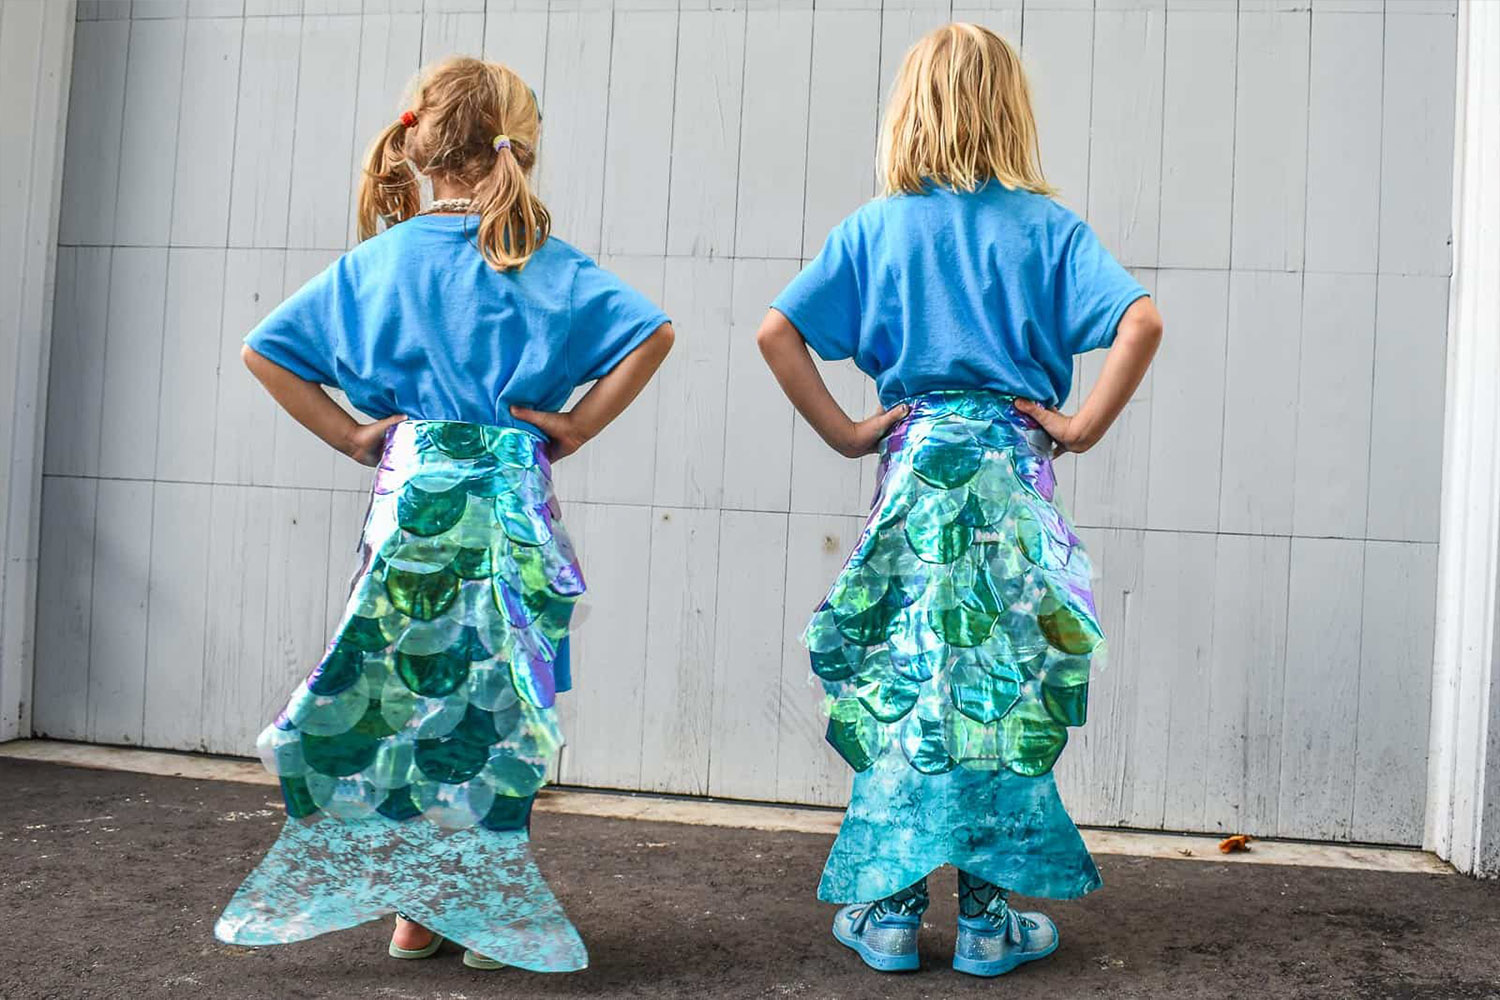 girls mermaid costume